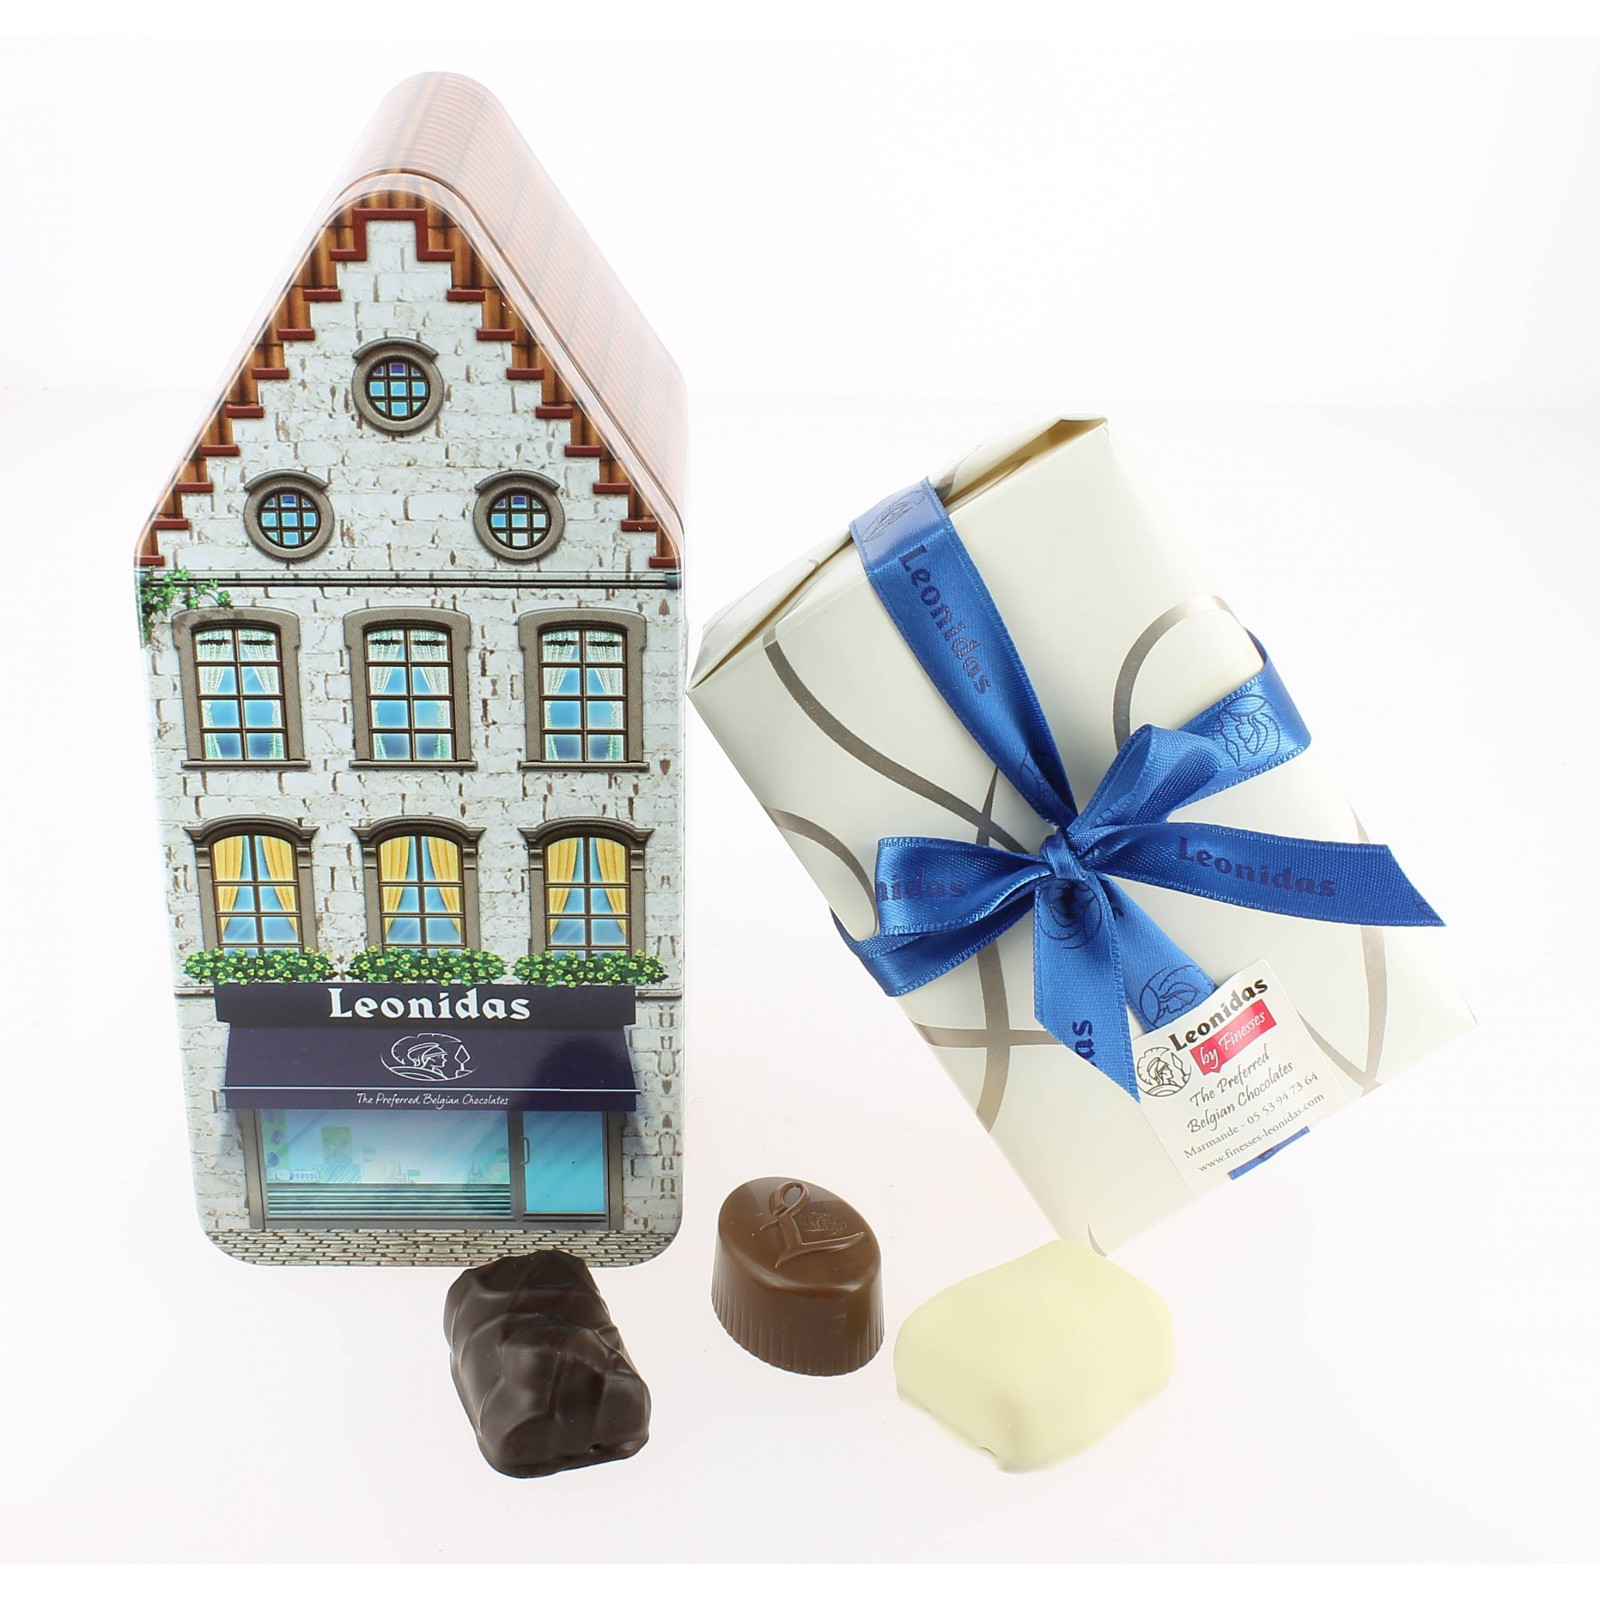 La maison Belge et ses chocolats Leonidas